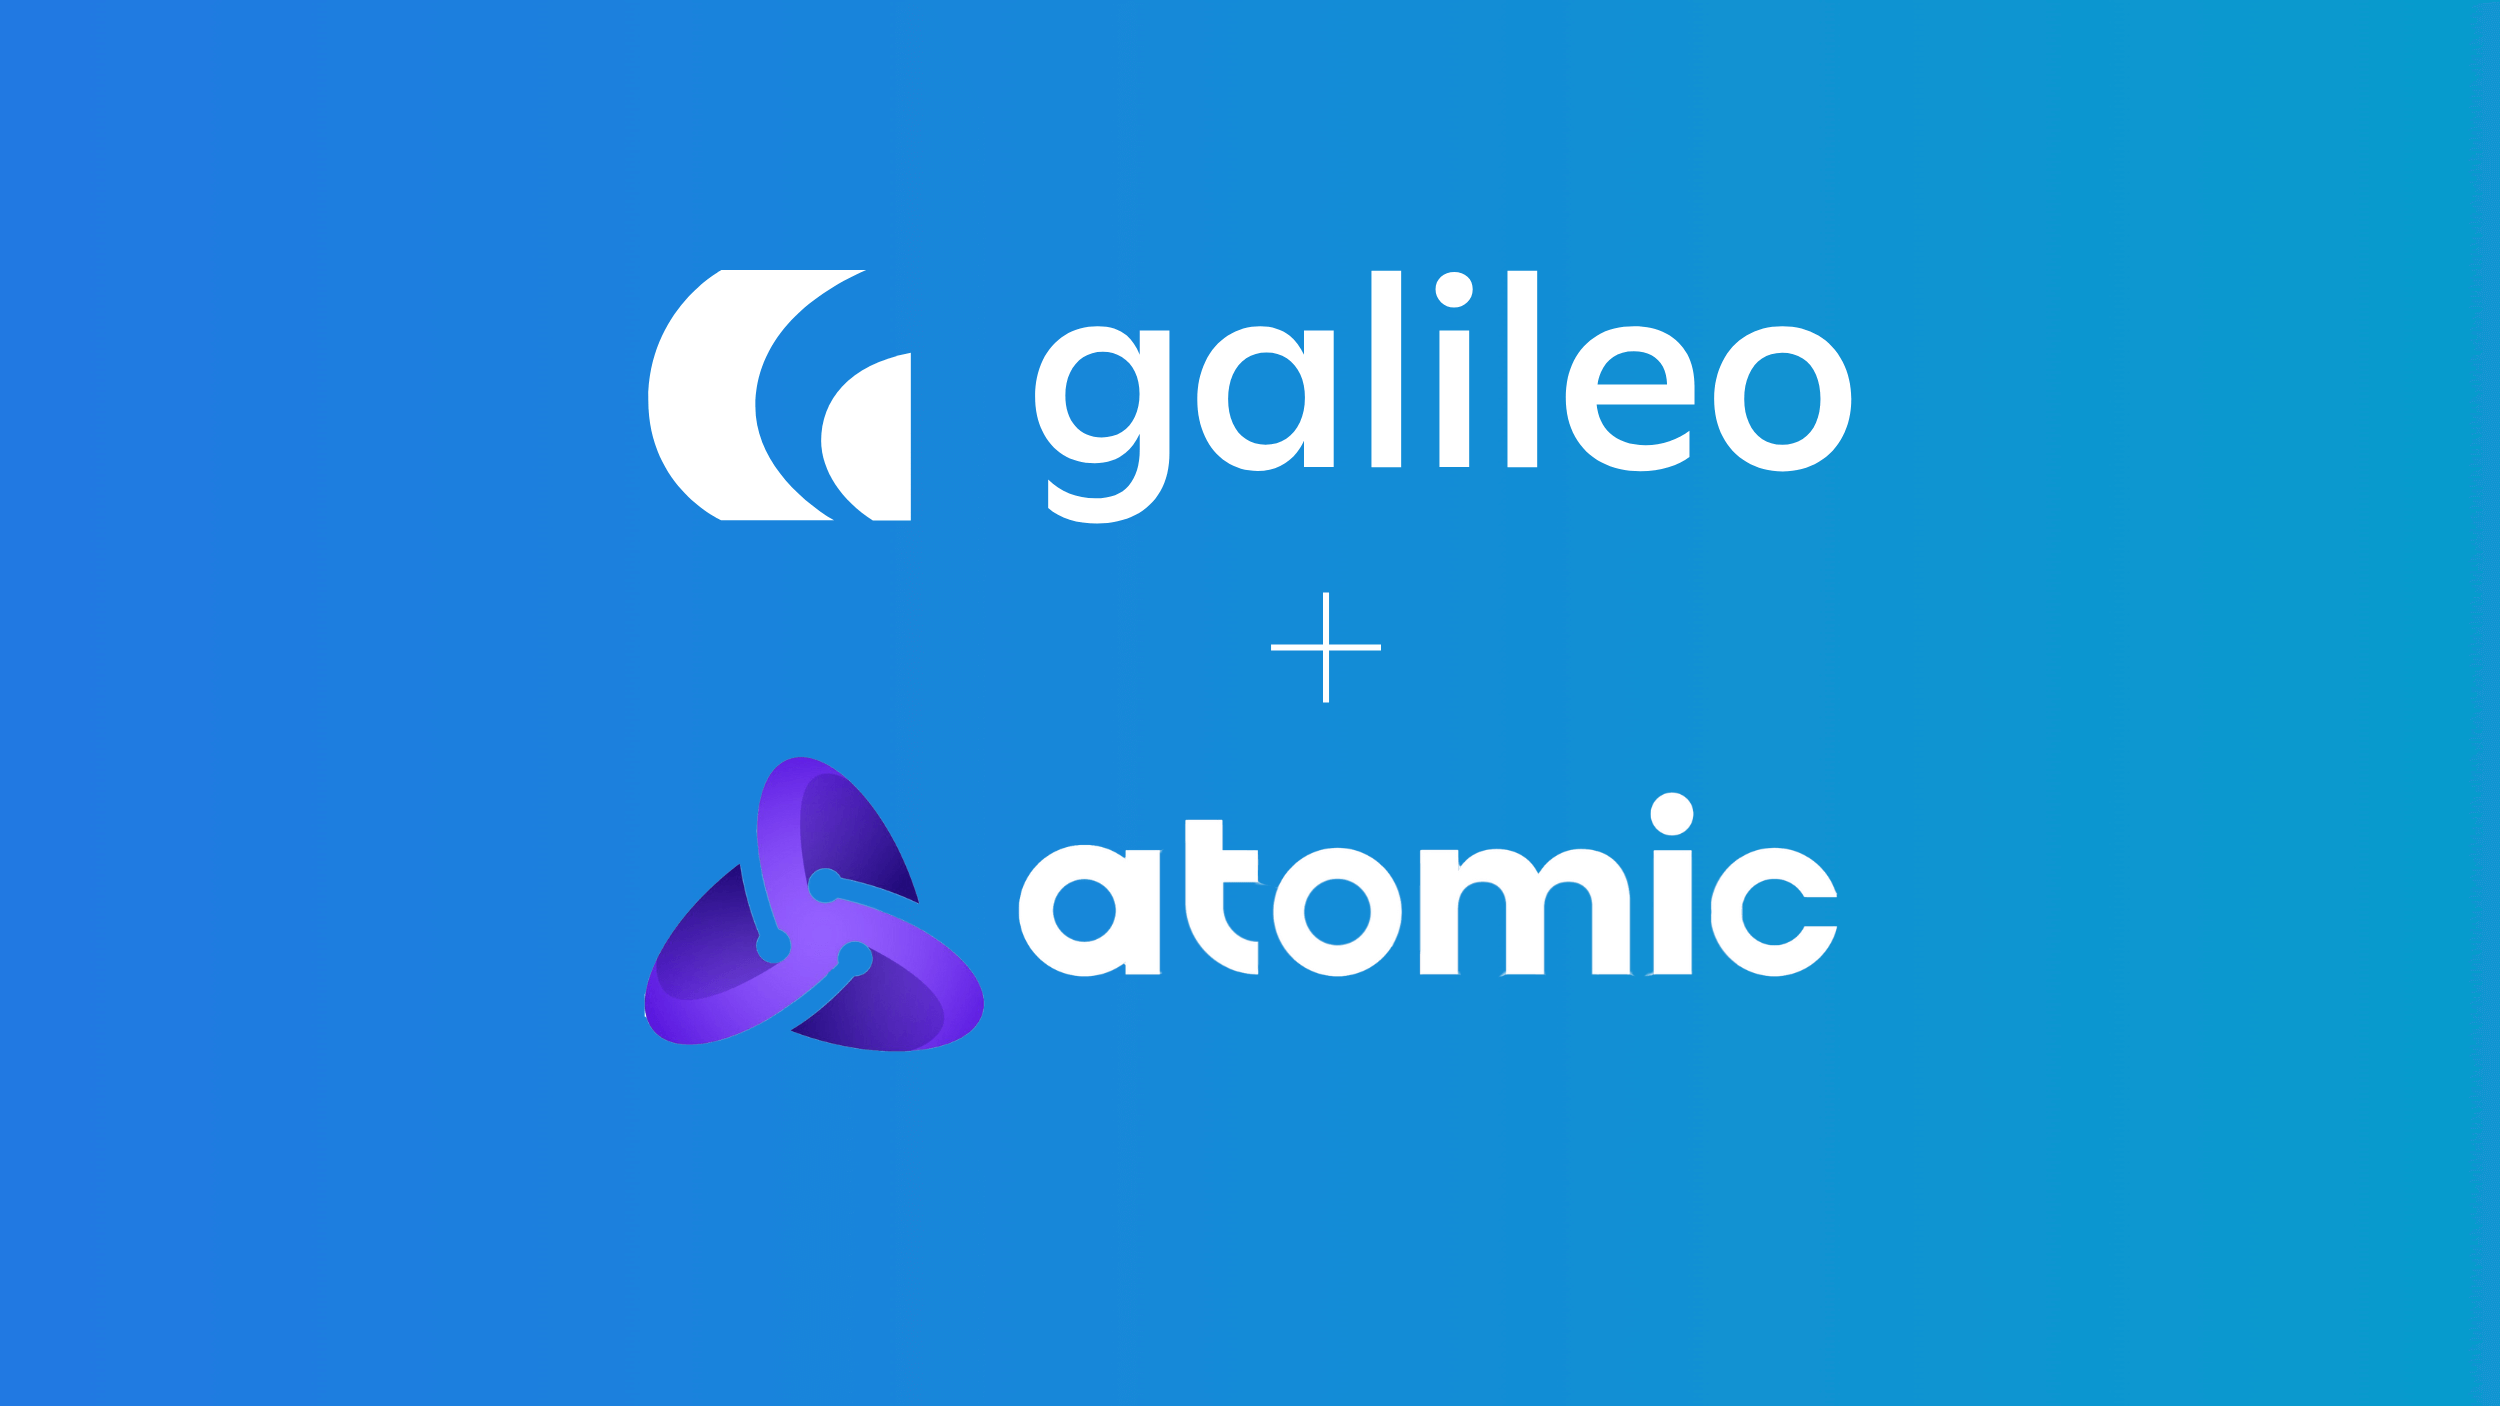 Galileo and Atomic logos